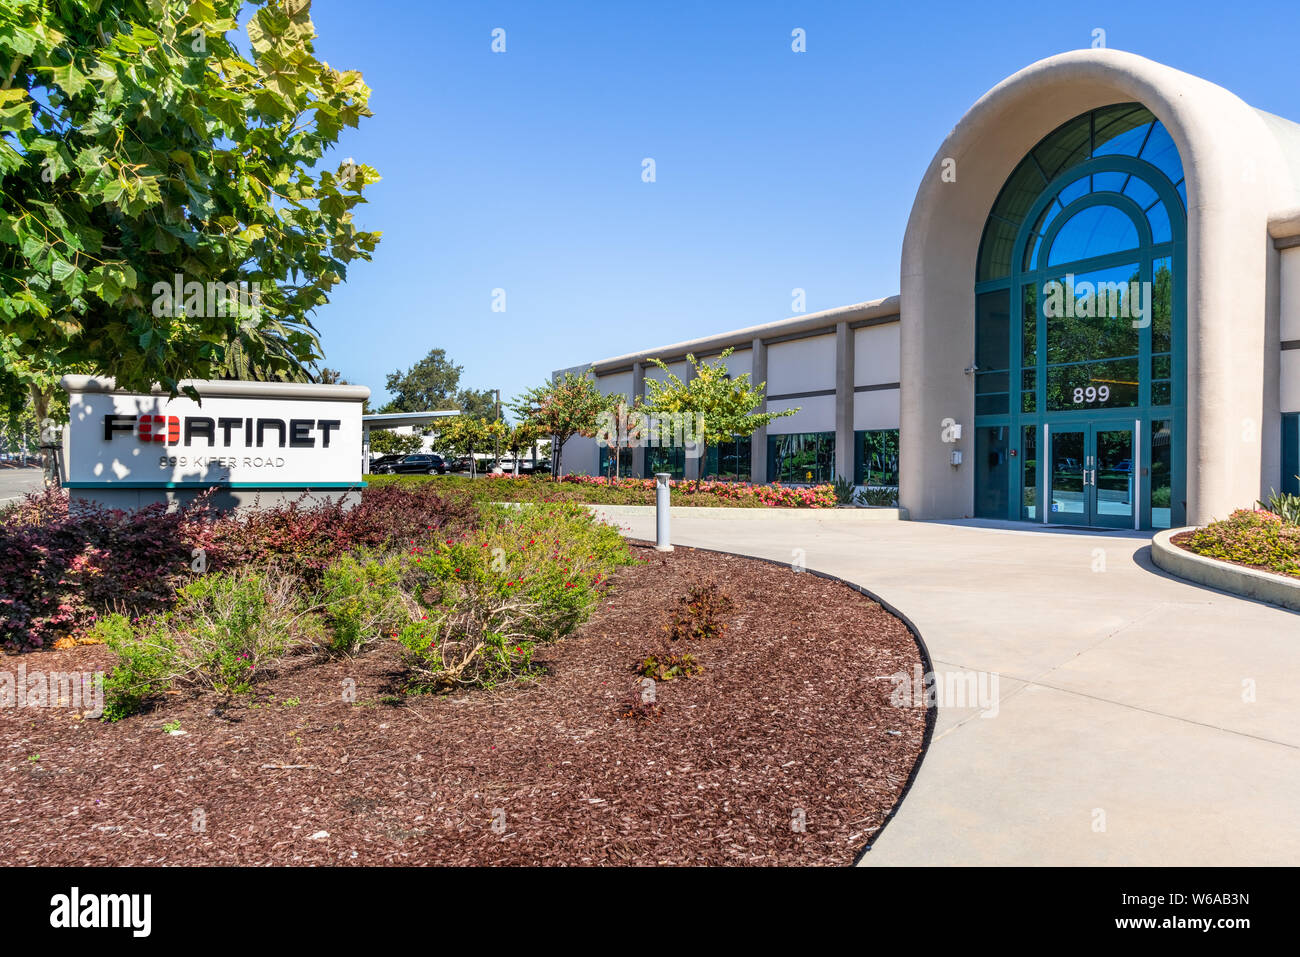 Luglio 31, 2019 Sunnyvale / CA / STATI UNITI D'AMERICA - Fortinet sede nella Silicon Valley; Fortinet Inc. è una società americana che sviluppa e commercializza cybersec Foto Stock